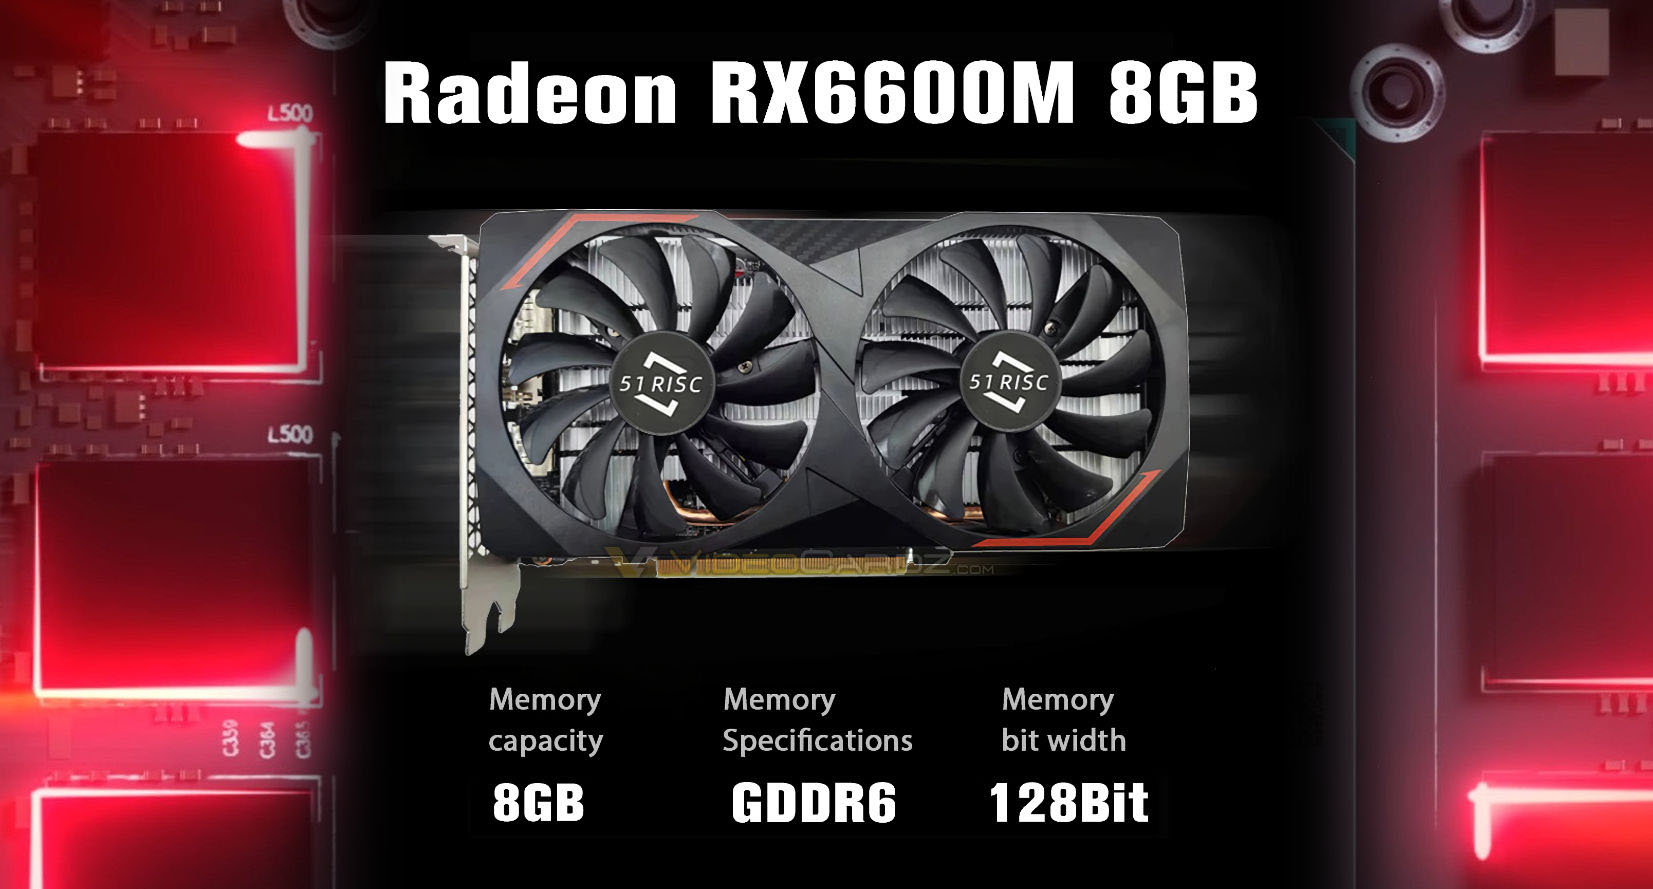 Mobilní GPU AMD Radeon RX 6600M se prodávají jako stolní karty mnohem levněji než RX 6600